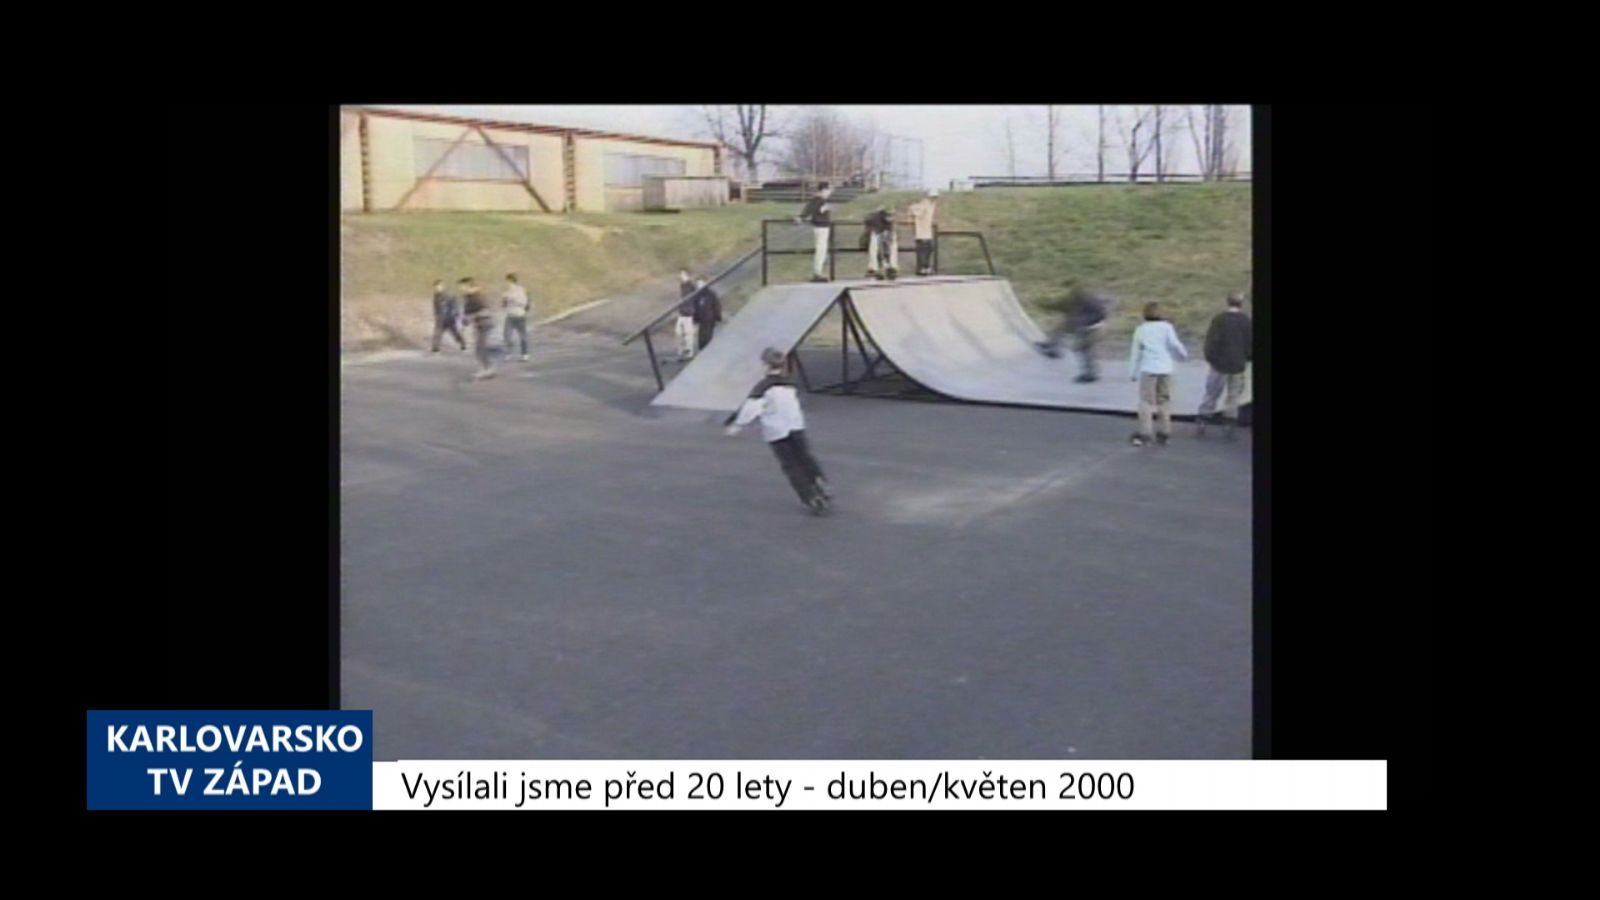 2000 – Cheb: Byl slavnostně otevřen skatepark (TV Západ)